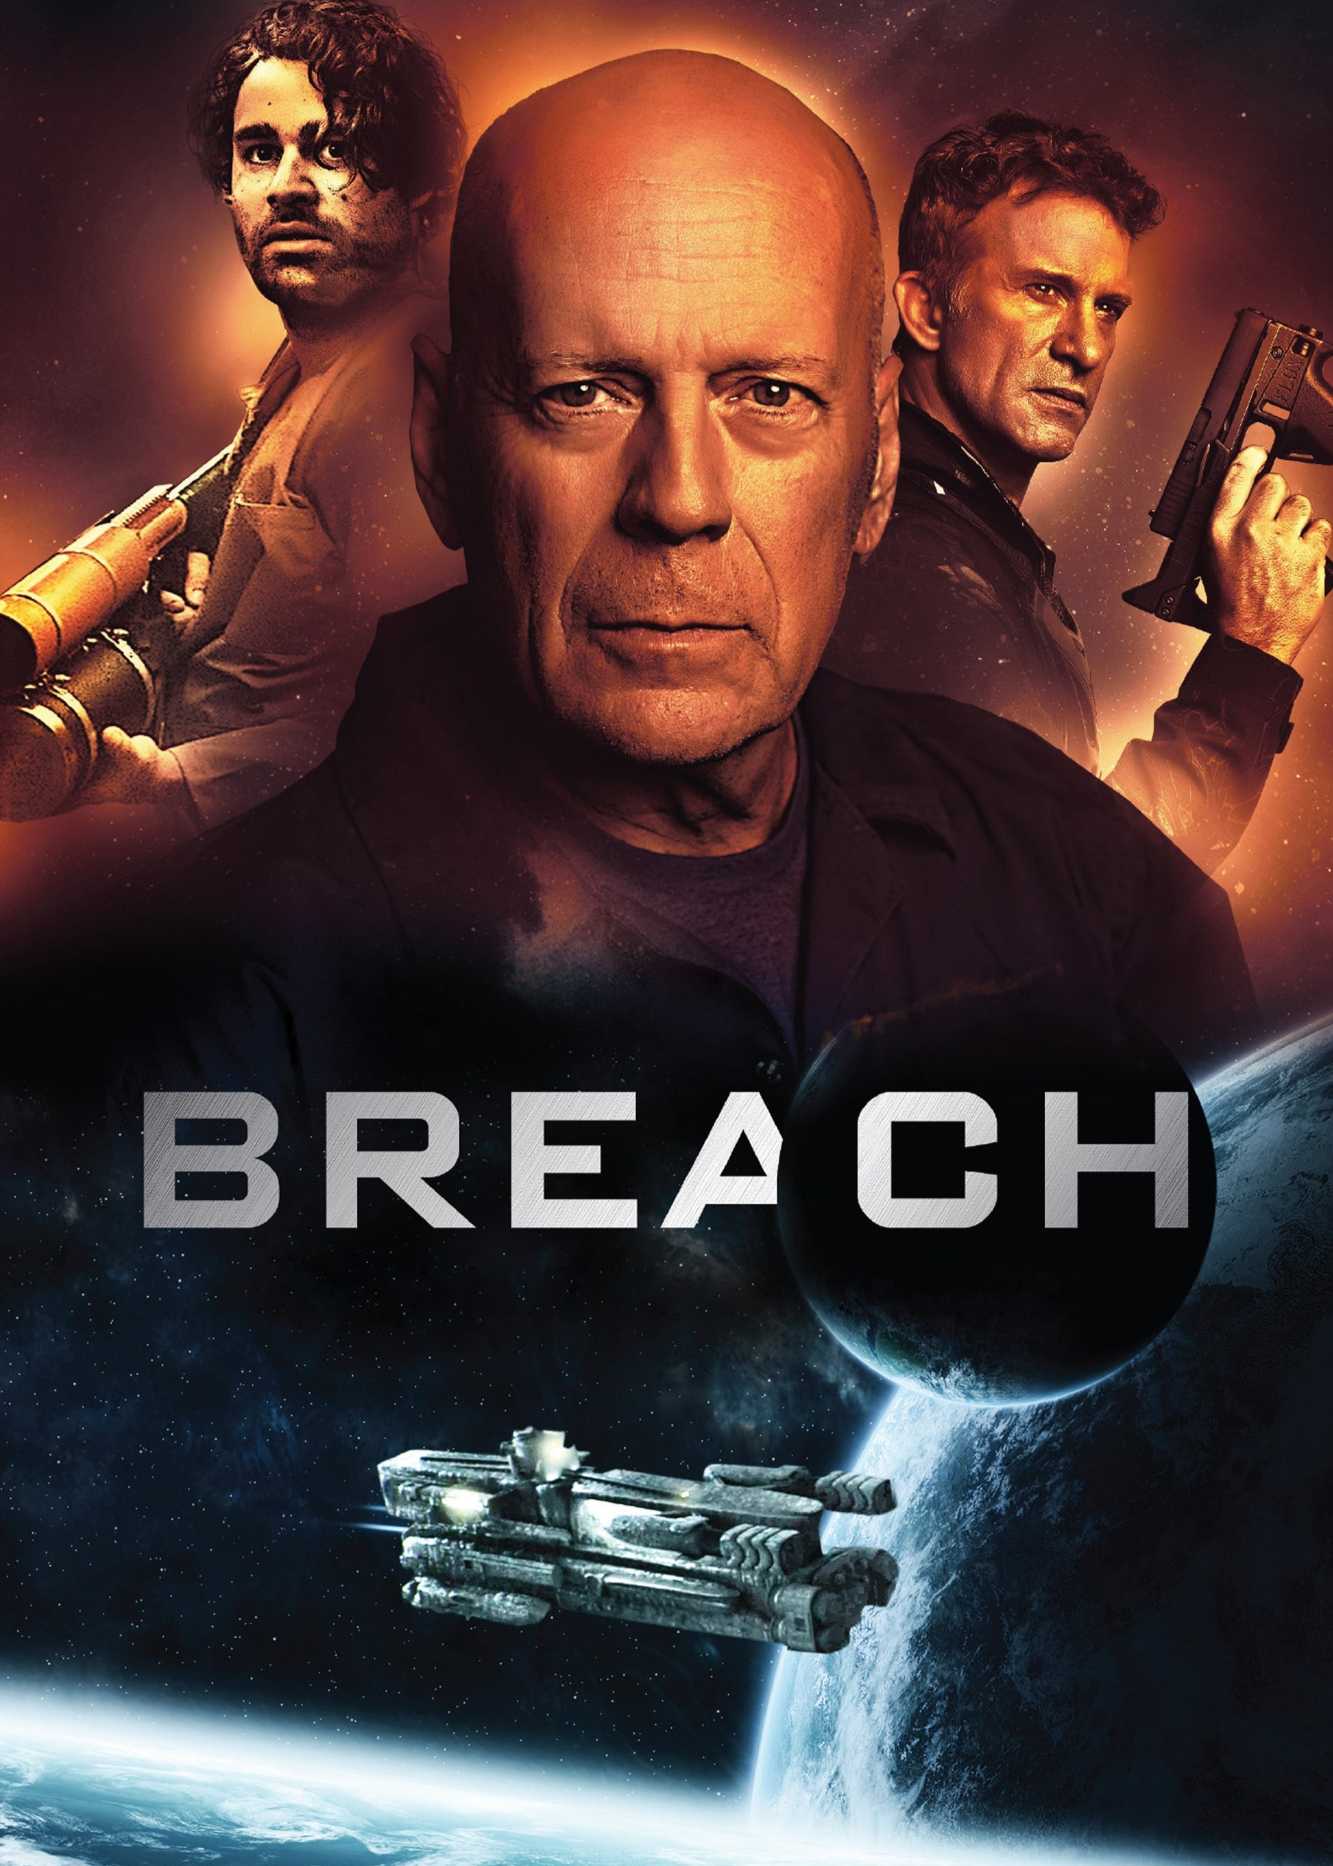 Breach - Breach